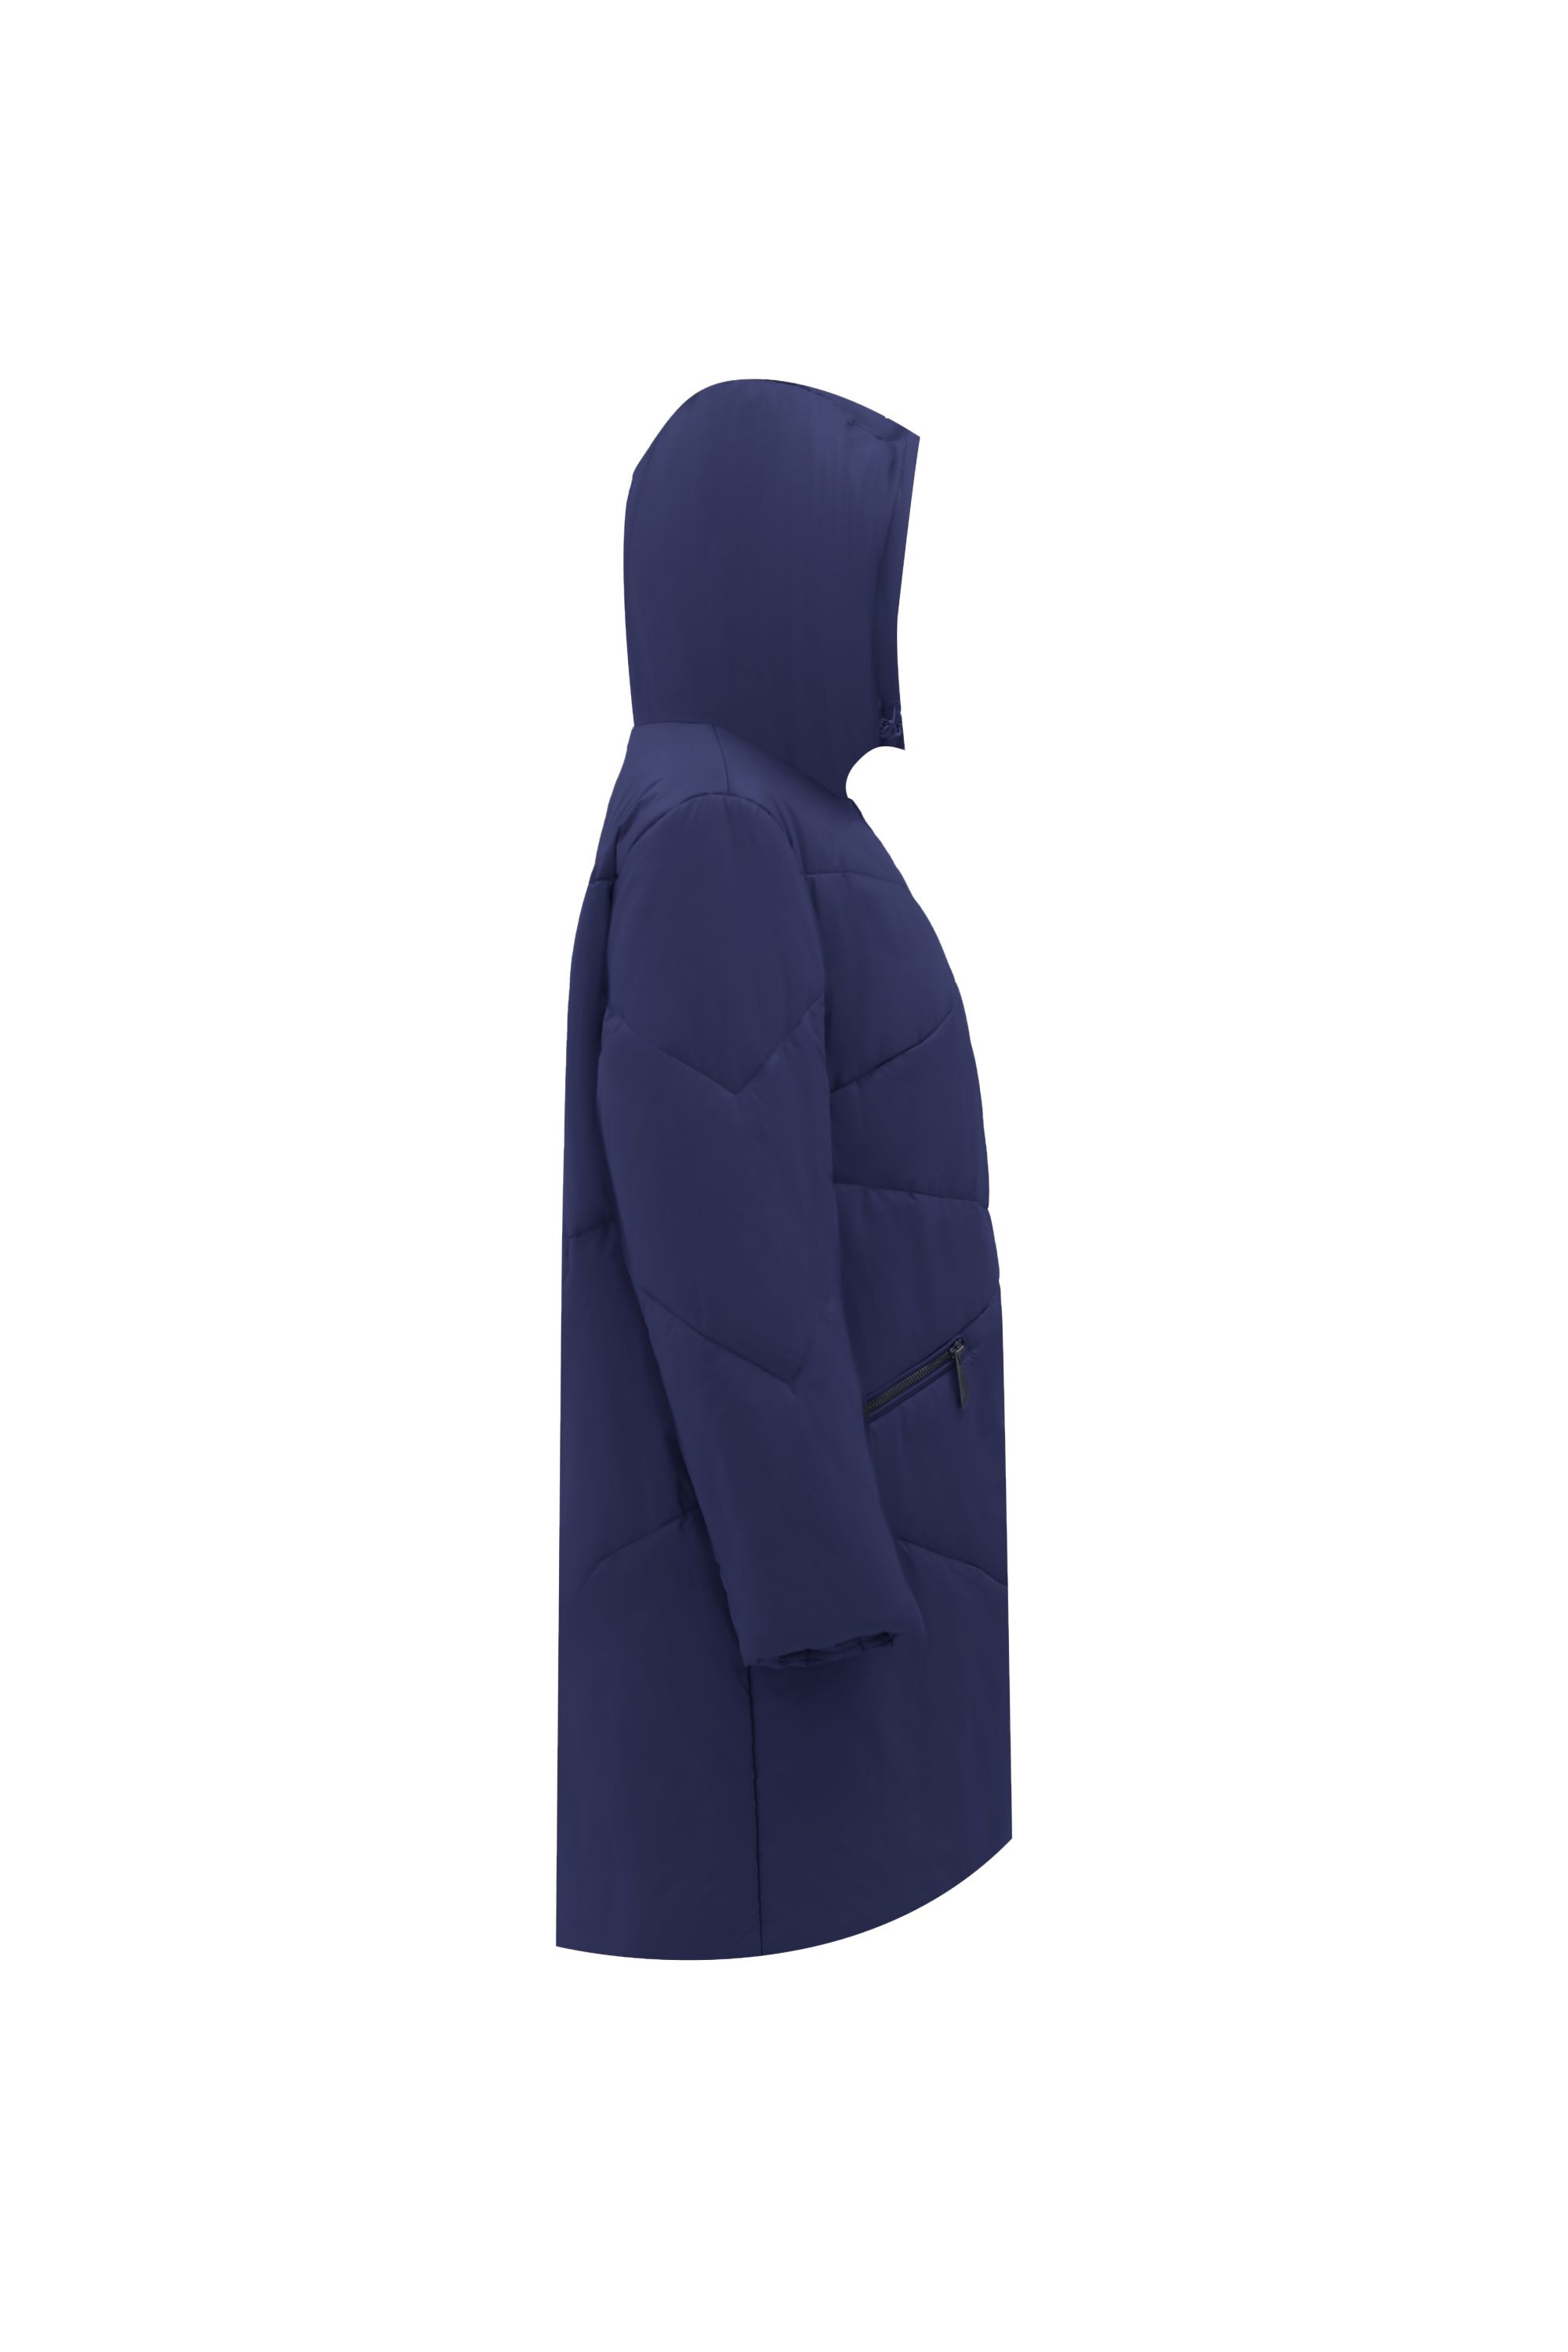 Пальто женское плащевое утепленное 5-12337-1